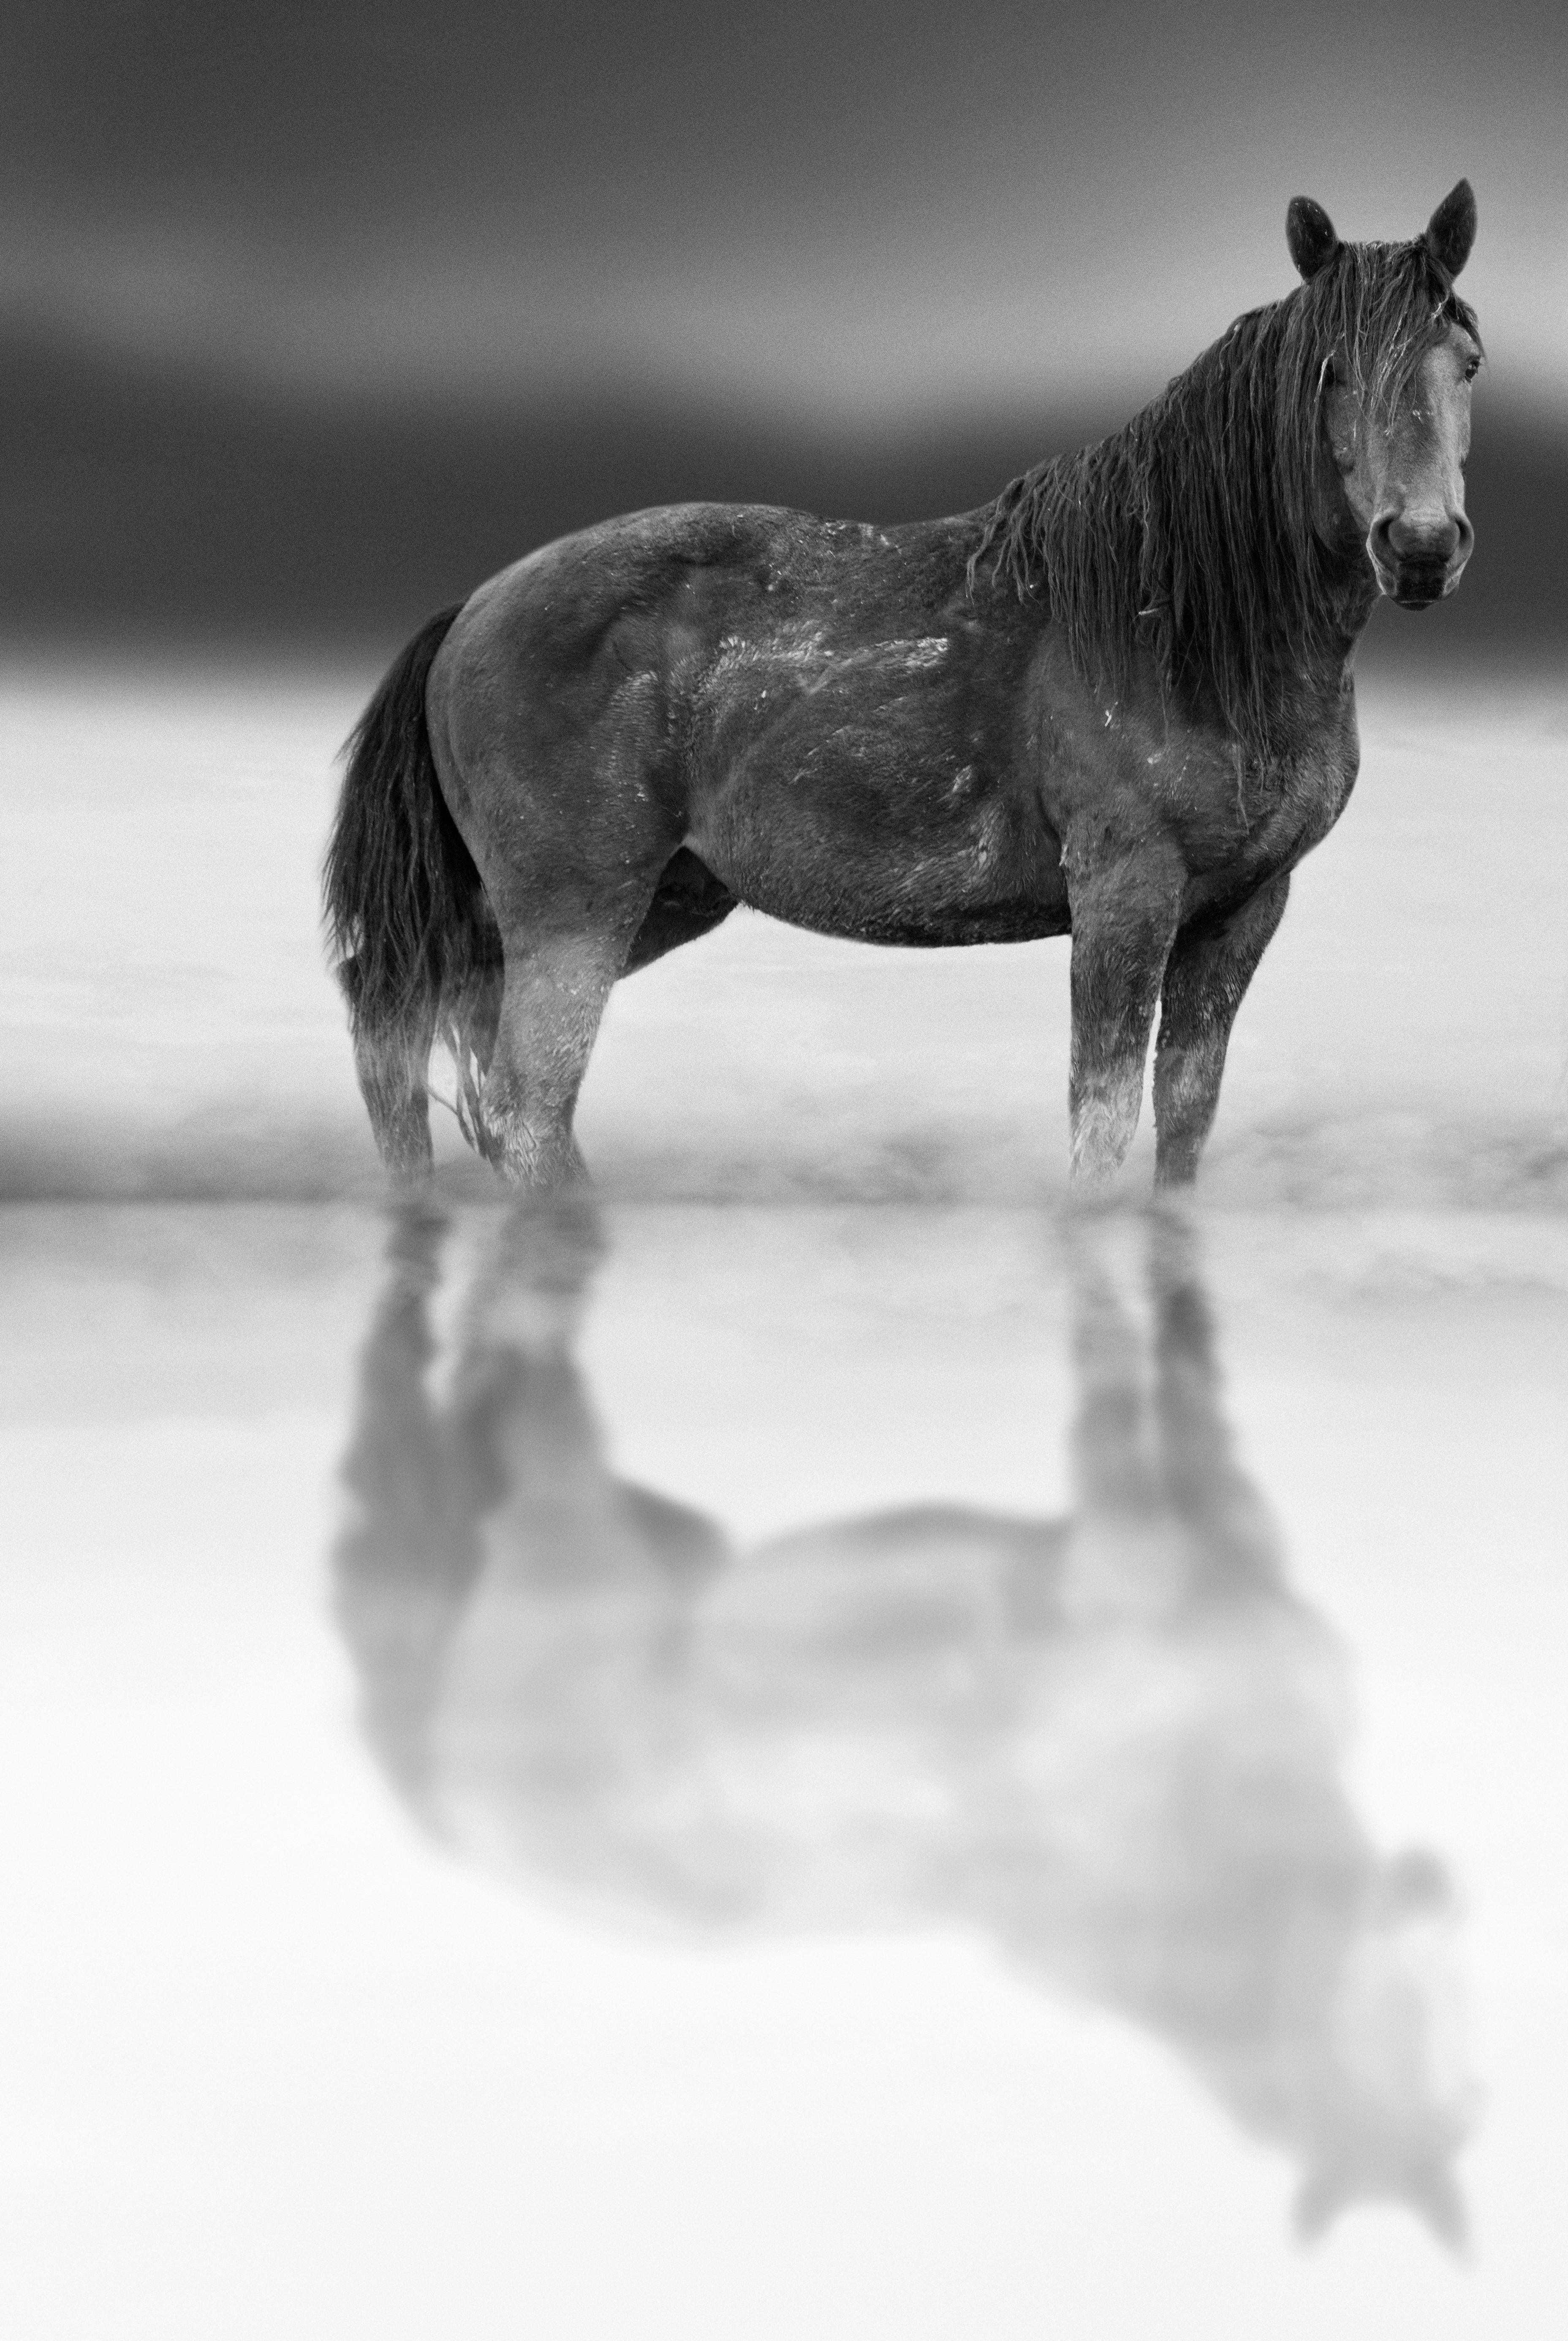 Animal Print Shane Russeck - « Belle Starr » 36x48  Photographie en noir et blanc d'un cheval sauvage  Mustang Non signé